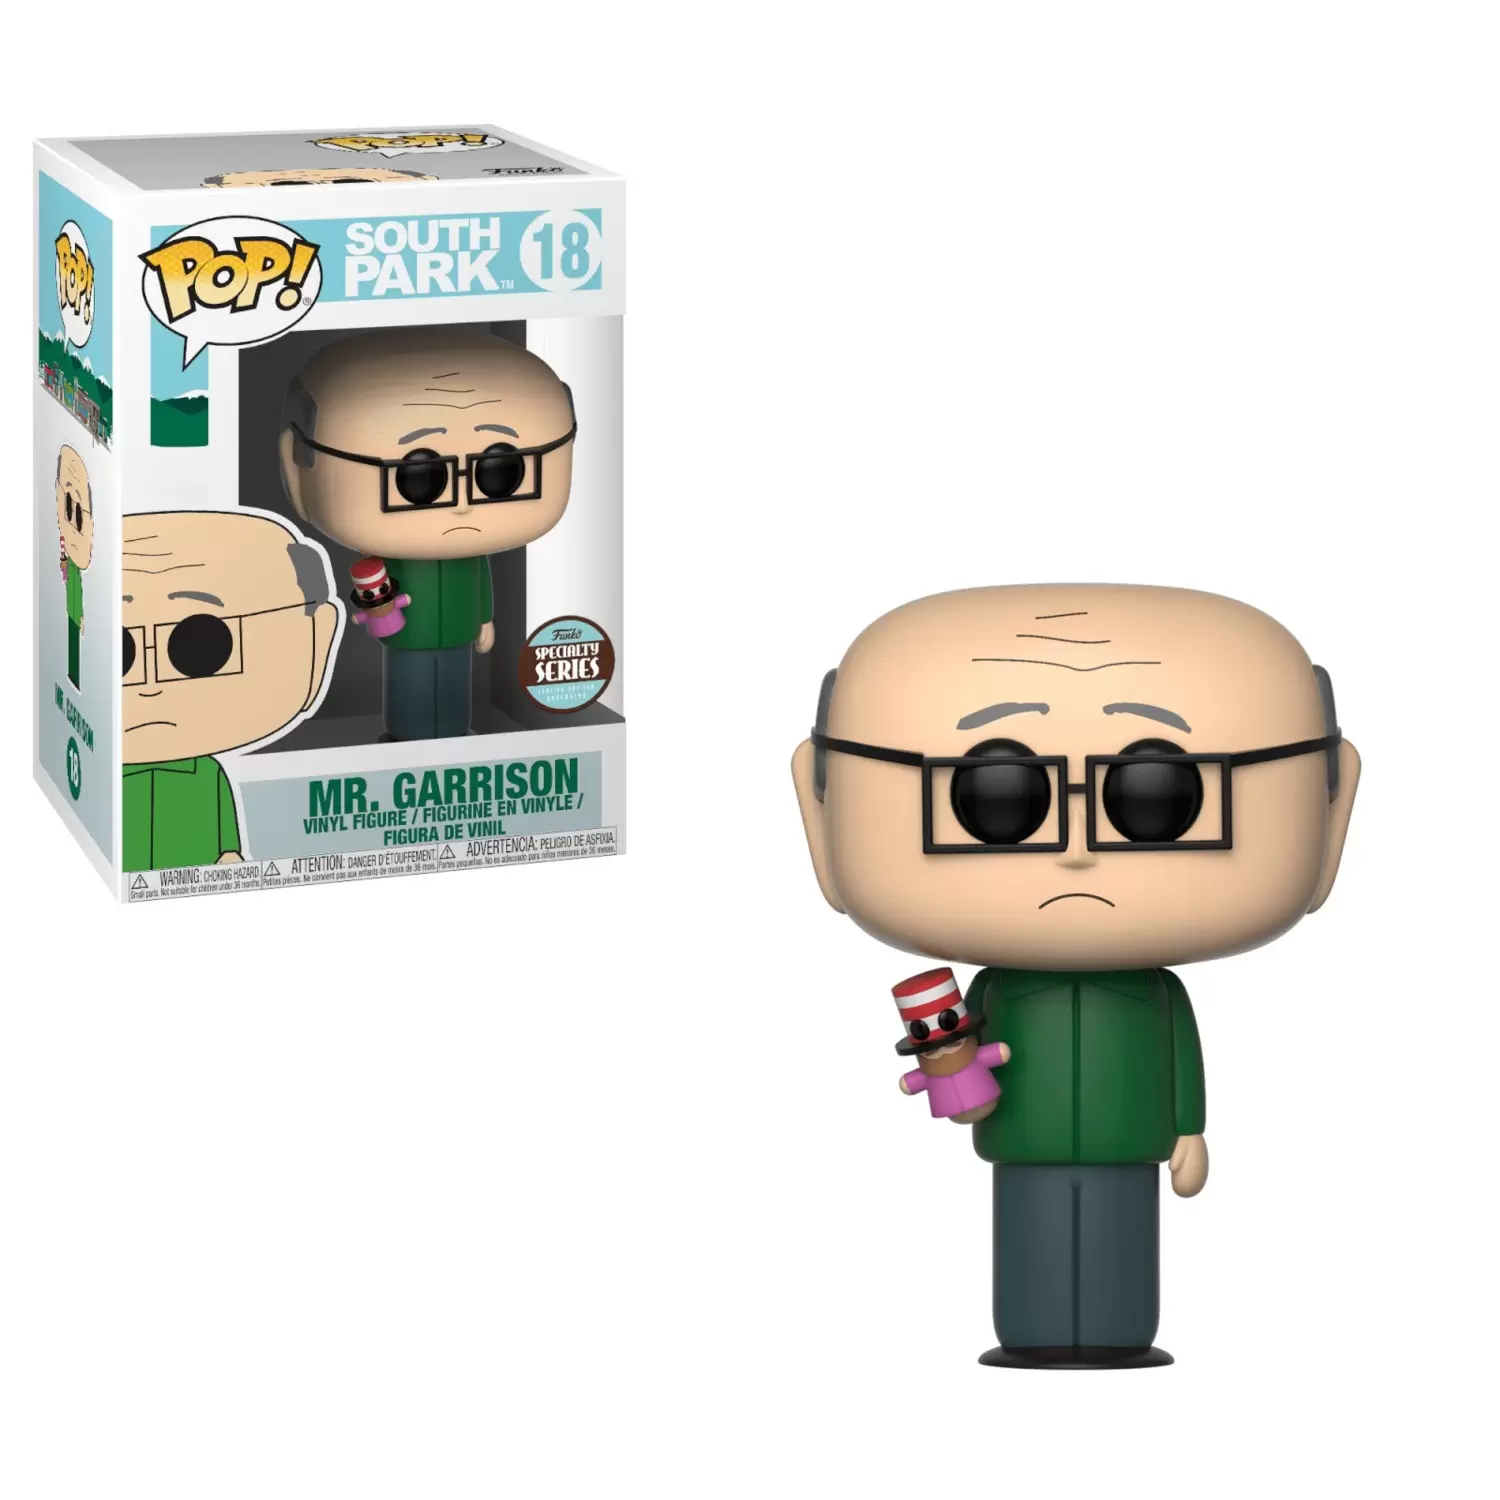 POP! South Park - South Park - Mr. Garrison